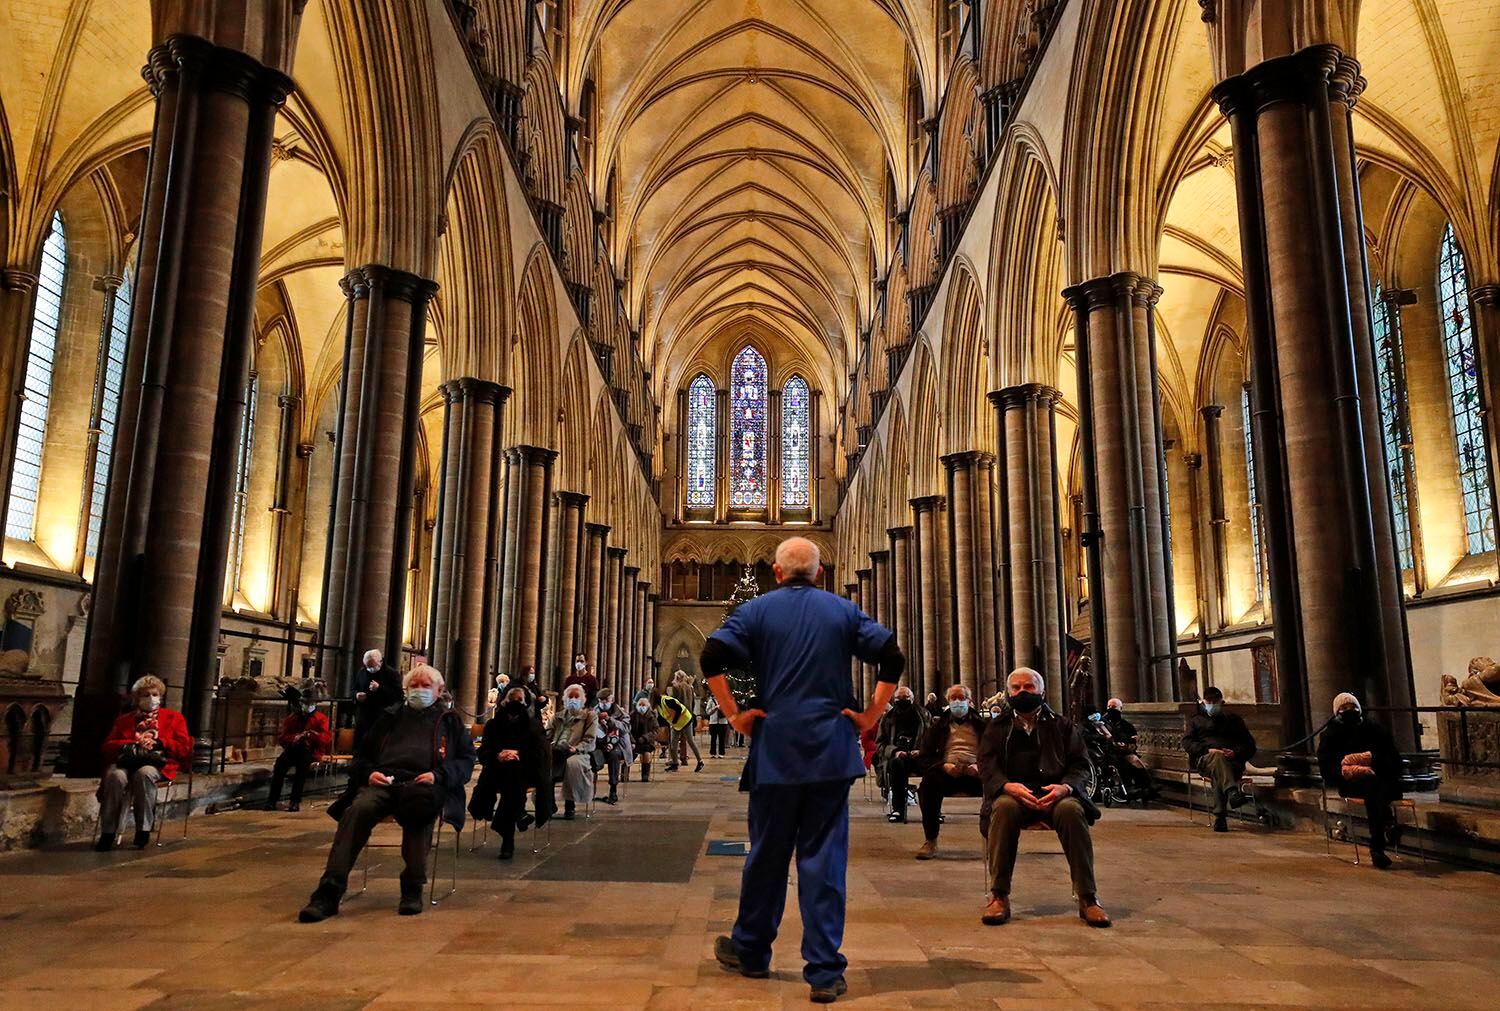 Un miembro del personal médico organiza a la gente que espera ser vacunada contra el COVID-19 en la catedral de Salisbury, Inglaterra, el 20 de enero del 2021. (AP Photo/Frank Augstein)